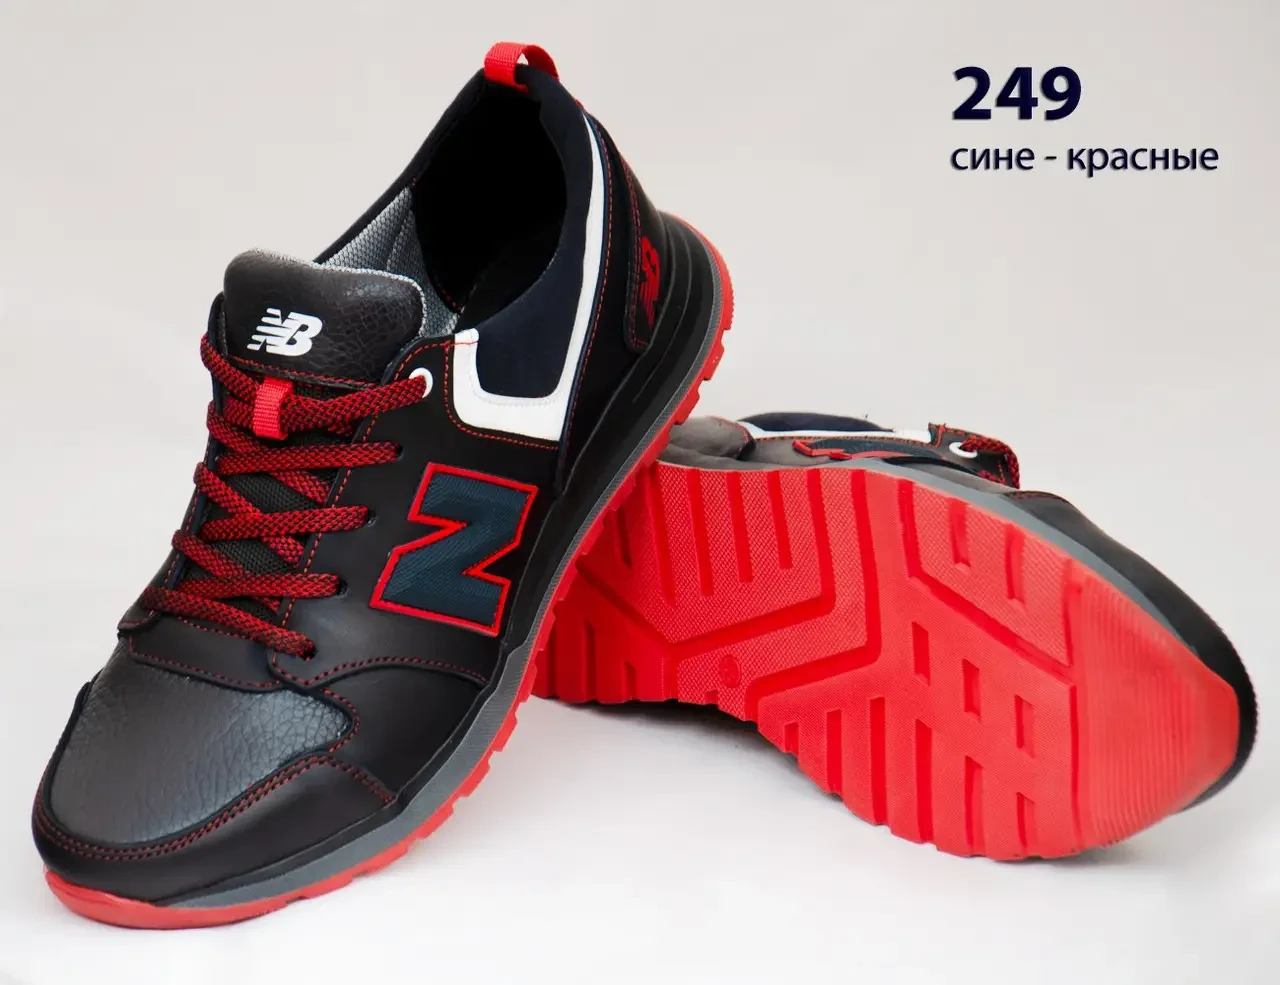 Шкіряні кросівки New Balance  (249 синьо-червона) чоловічі спортивні кросівки шкіряні чоловічі